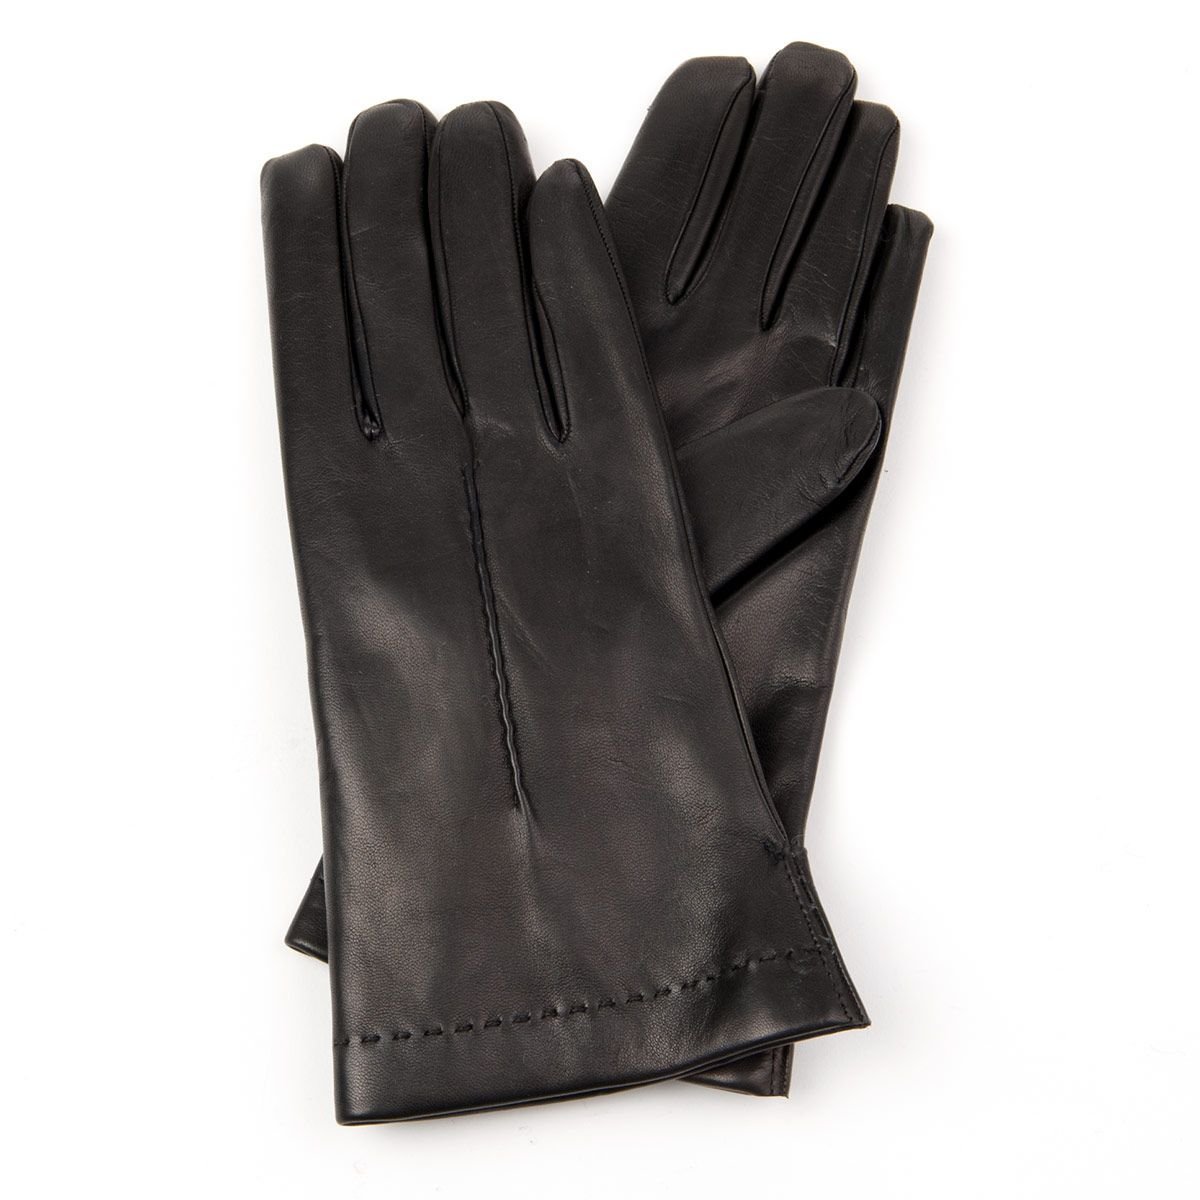 L Gr Accessoires Handschuhe Lederhandschuhe GII,dunkelbraune warme Lederhandschuh gef\u00fcttert 